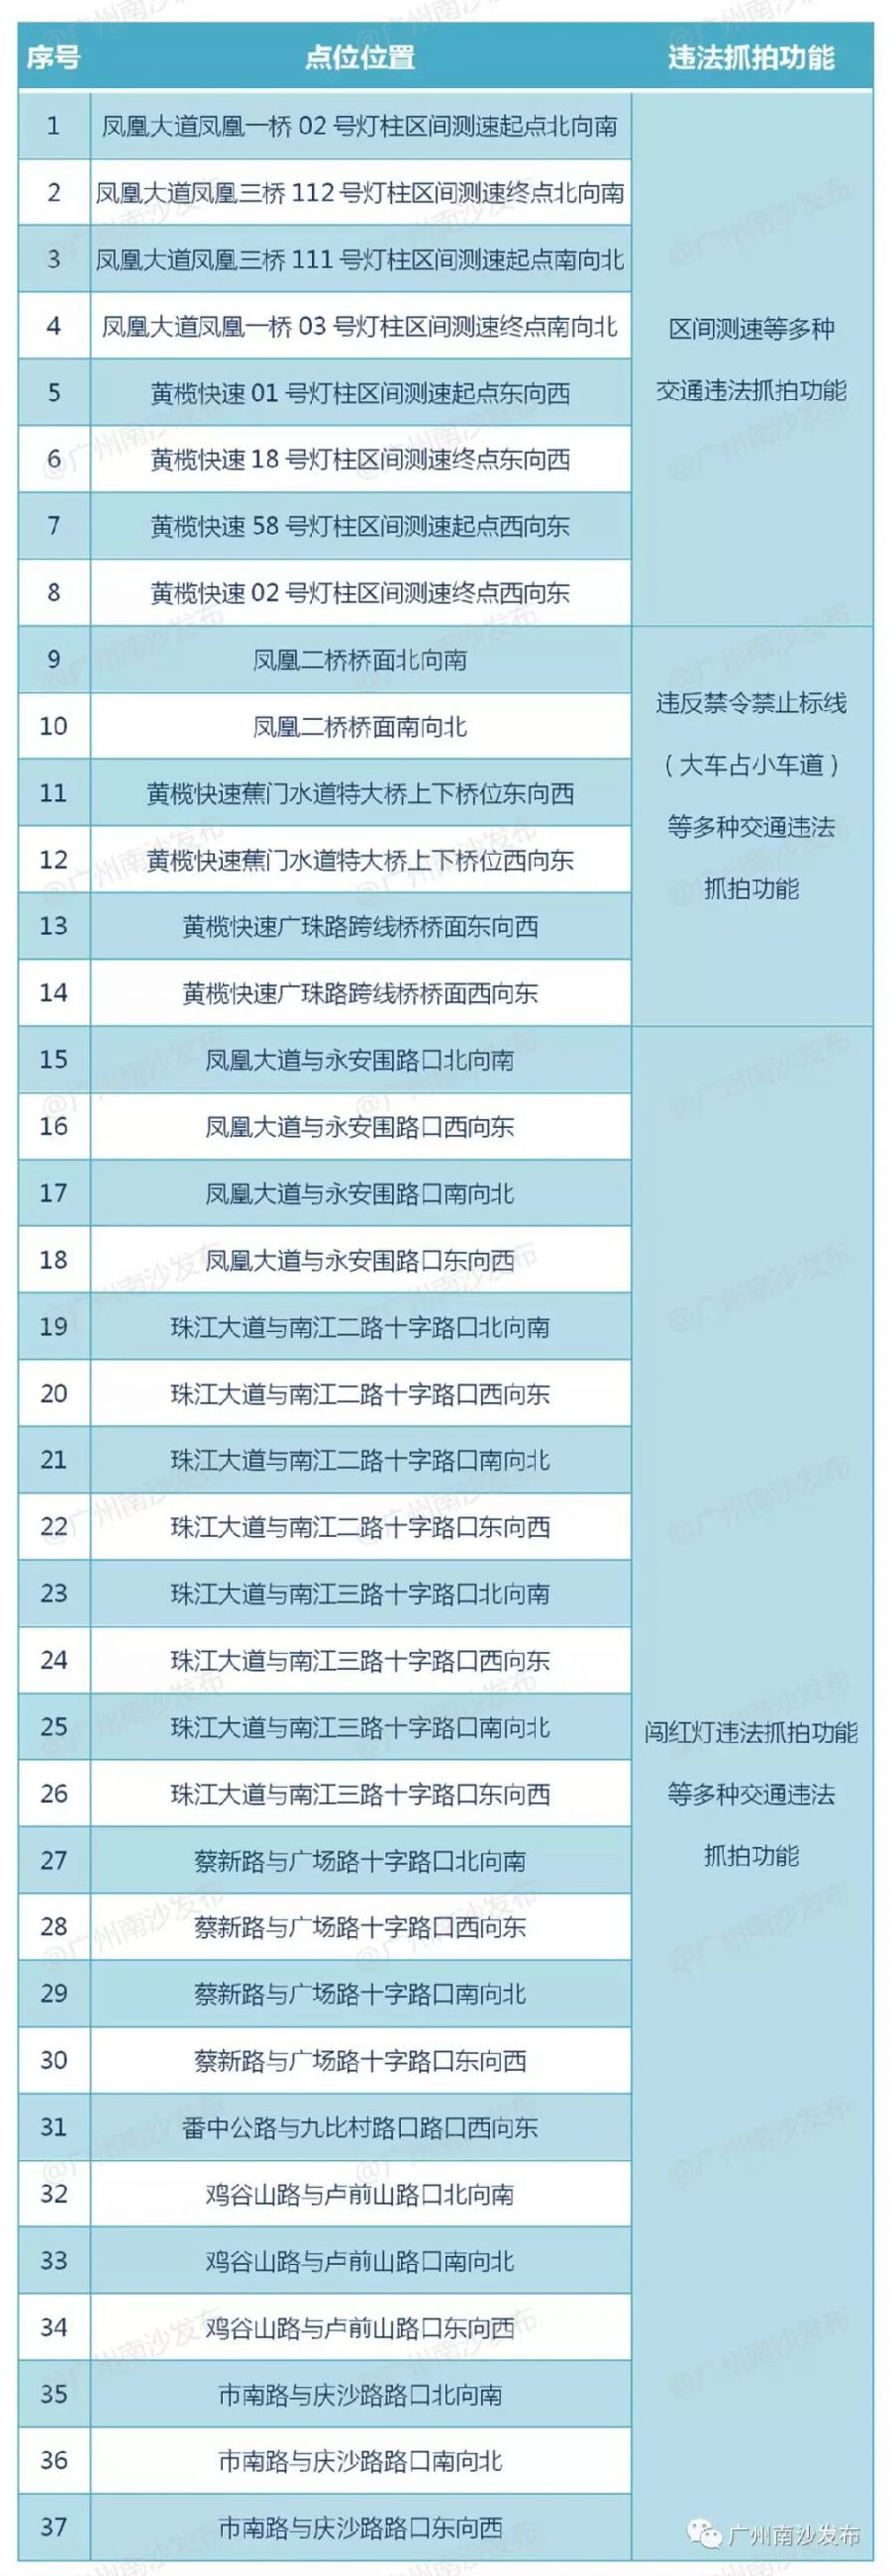 2019年9月13日起广州白云区将新增45个电子警察